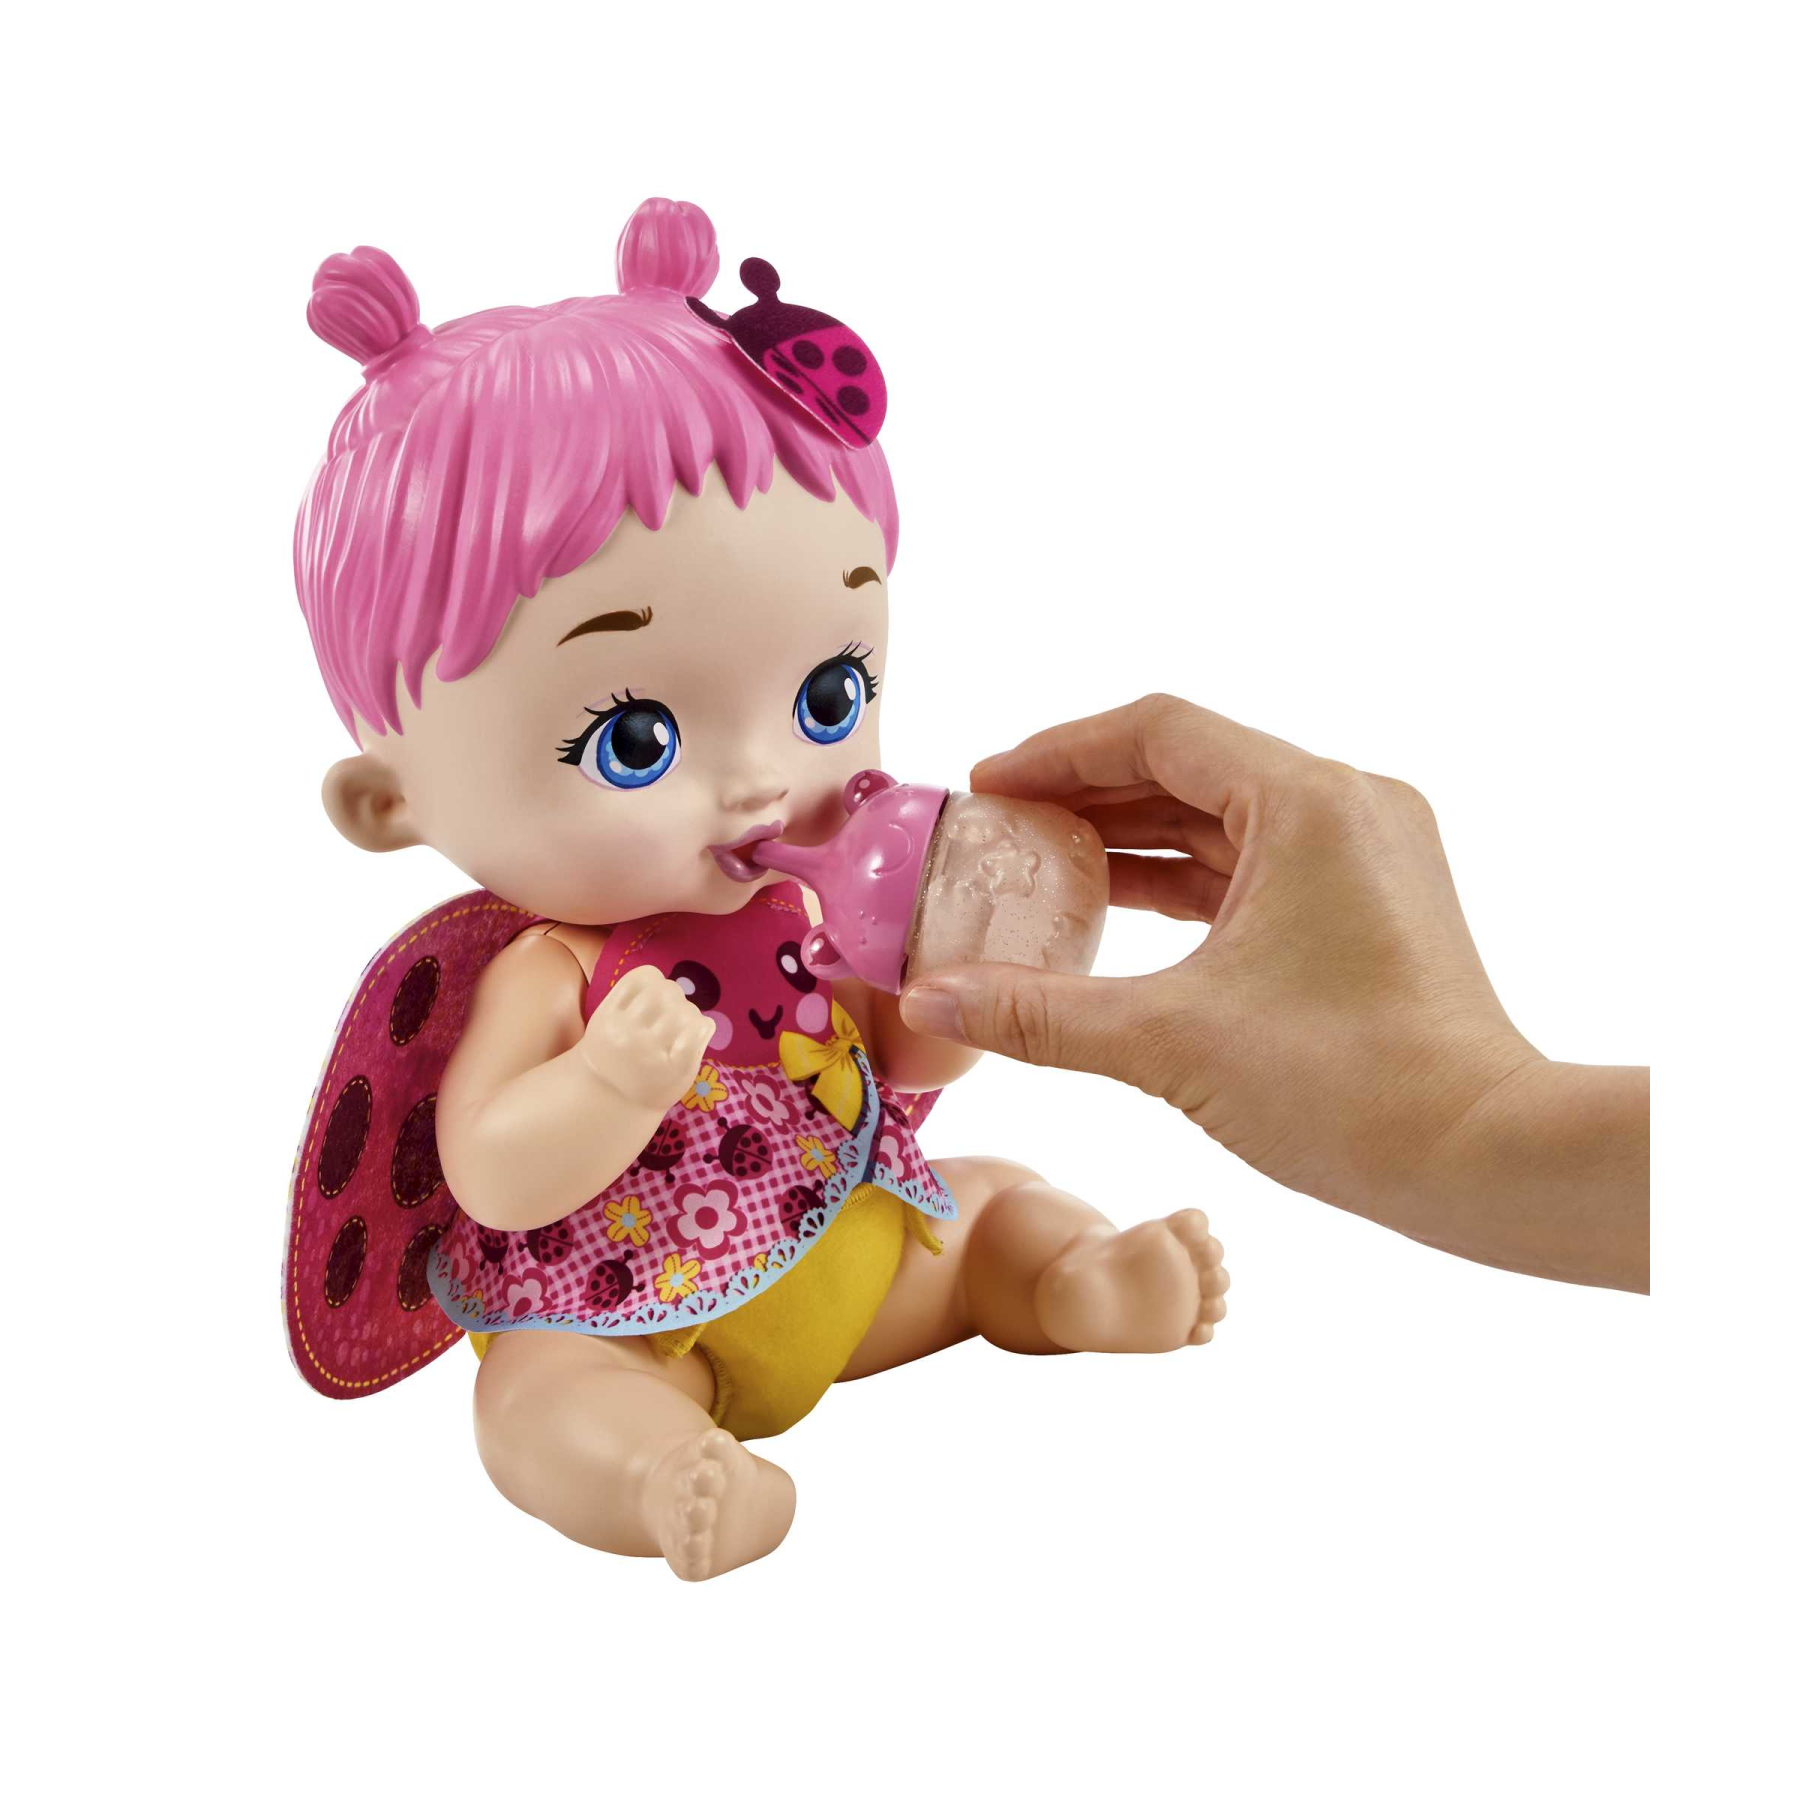 My garden baby - bambola junior coccinella con ali soffici e dolce profumo floreale, con un pannolino riutilizzabile, biberon e accessori, giocattolo per bambini, 3+ anni, hmx27 - MY GARDEN BABY